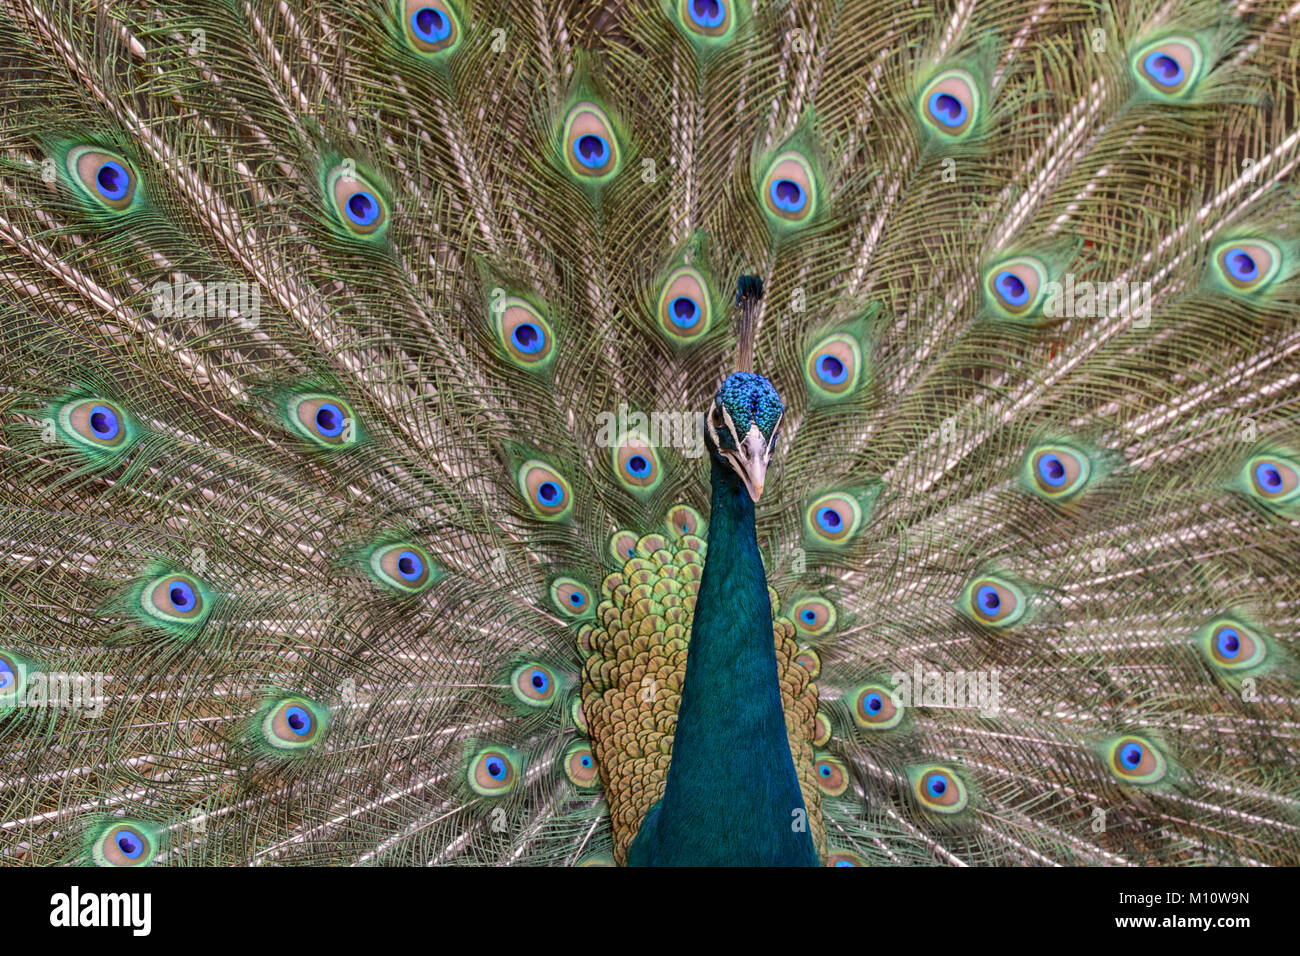 Close up ritratto di un indiano peafowl o peafowl blu (Pavo cristatus) con la sua coda di piume ventaglio dietro di lui. Comunemente noto come un pavone. Foto Stock